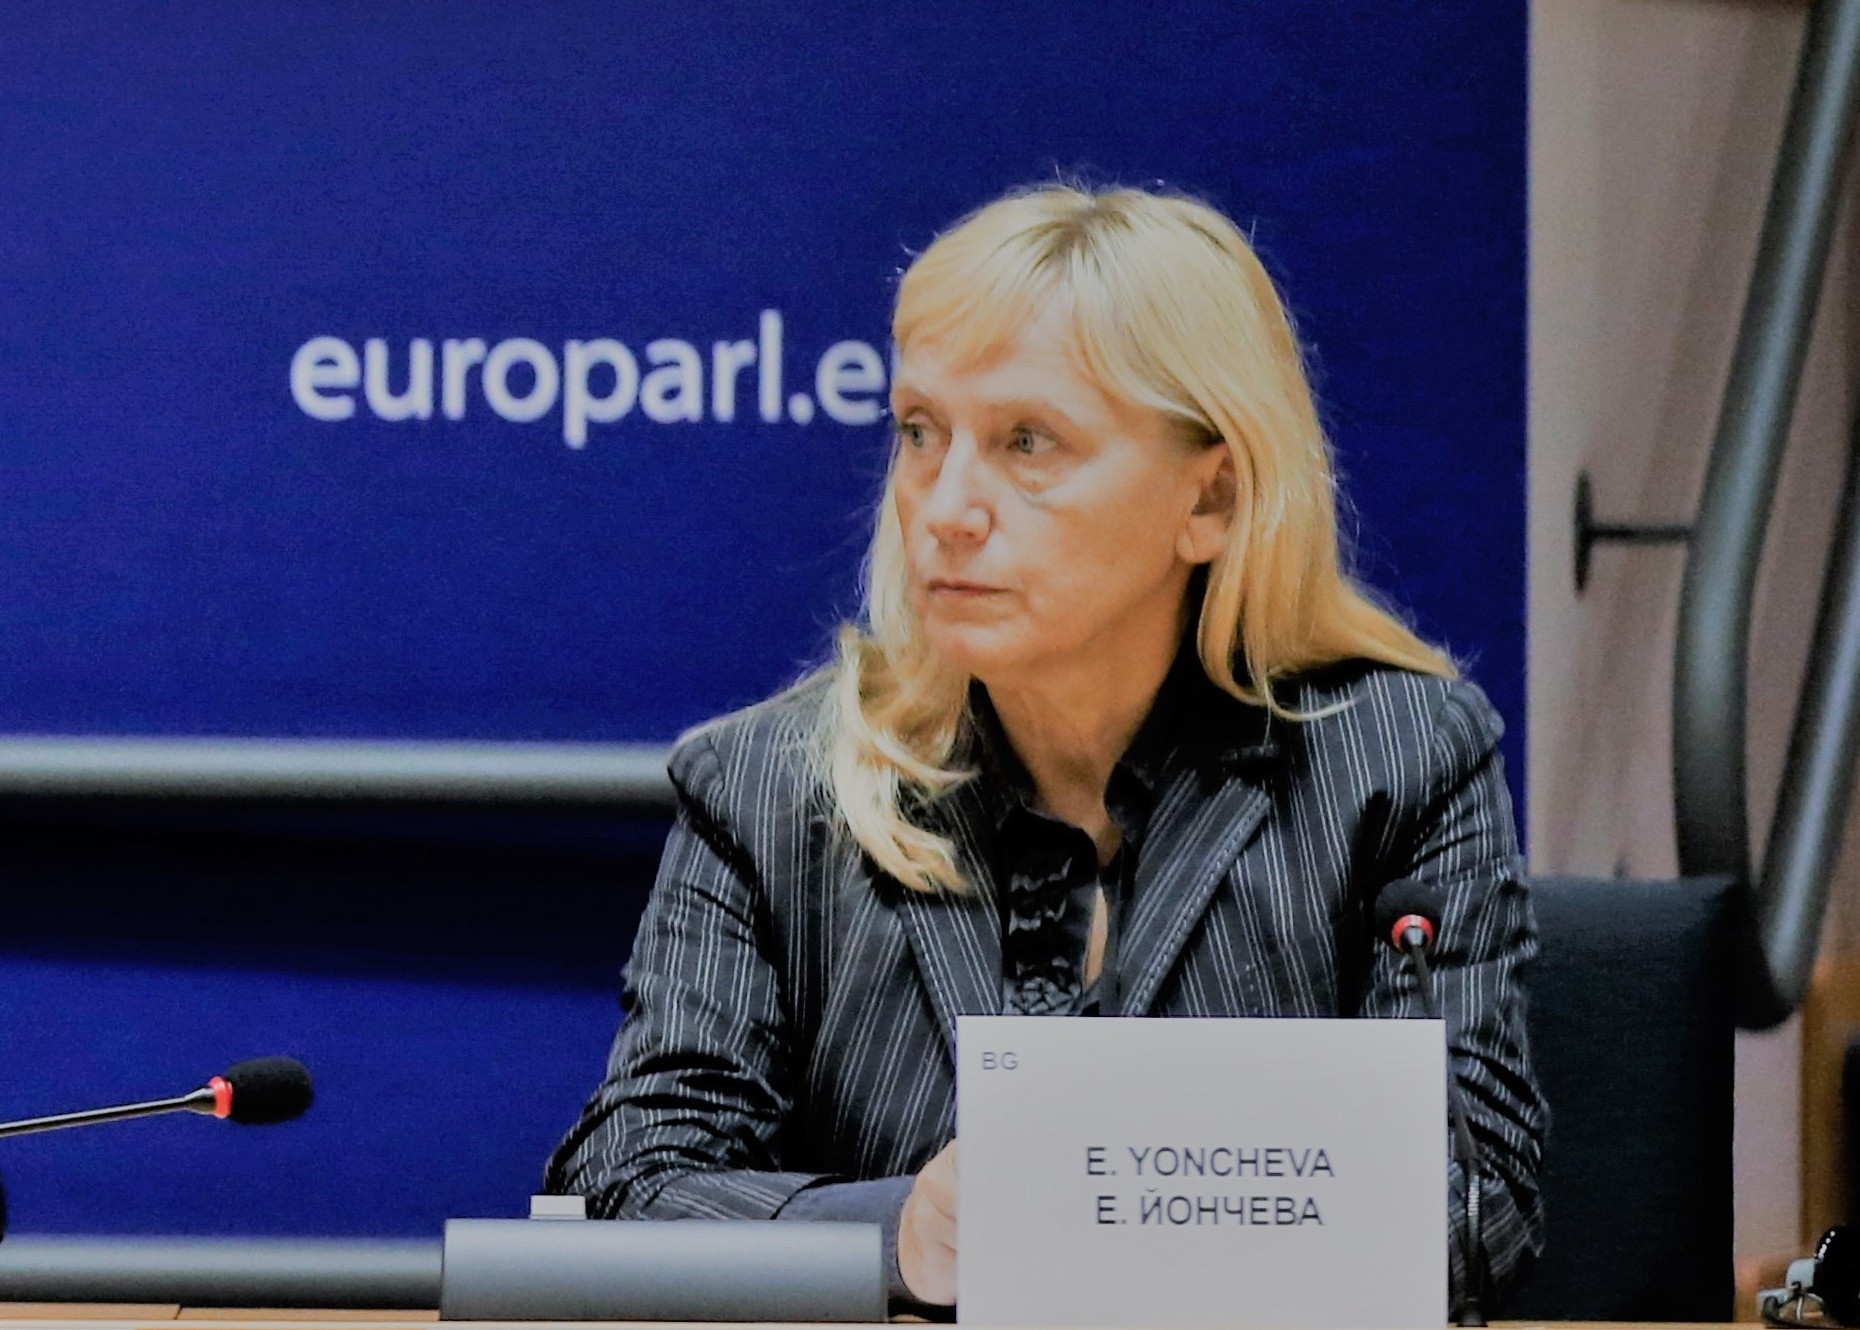 Елена Йончева: Следват тежки процедури, които ще бъдат насочени срещу Бойко Борисов и неговото правителство, не срещу българските граждани